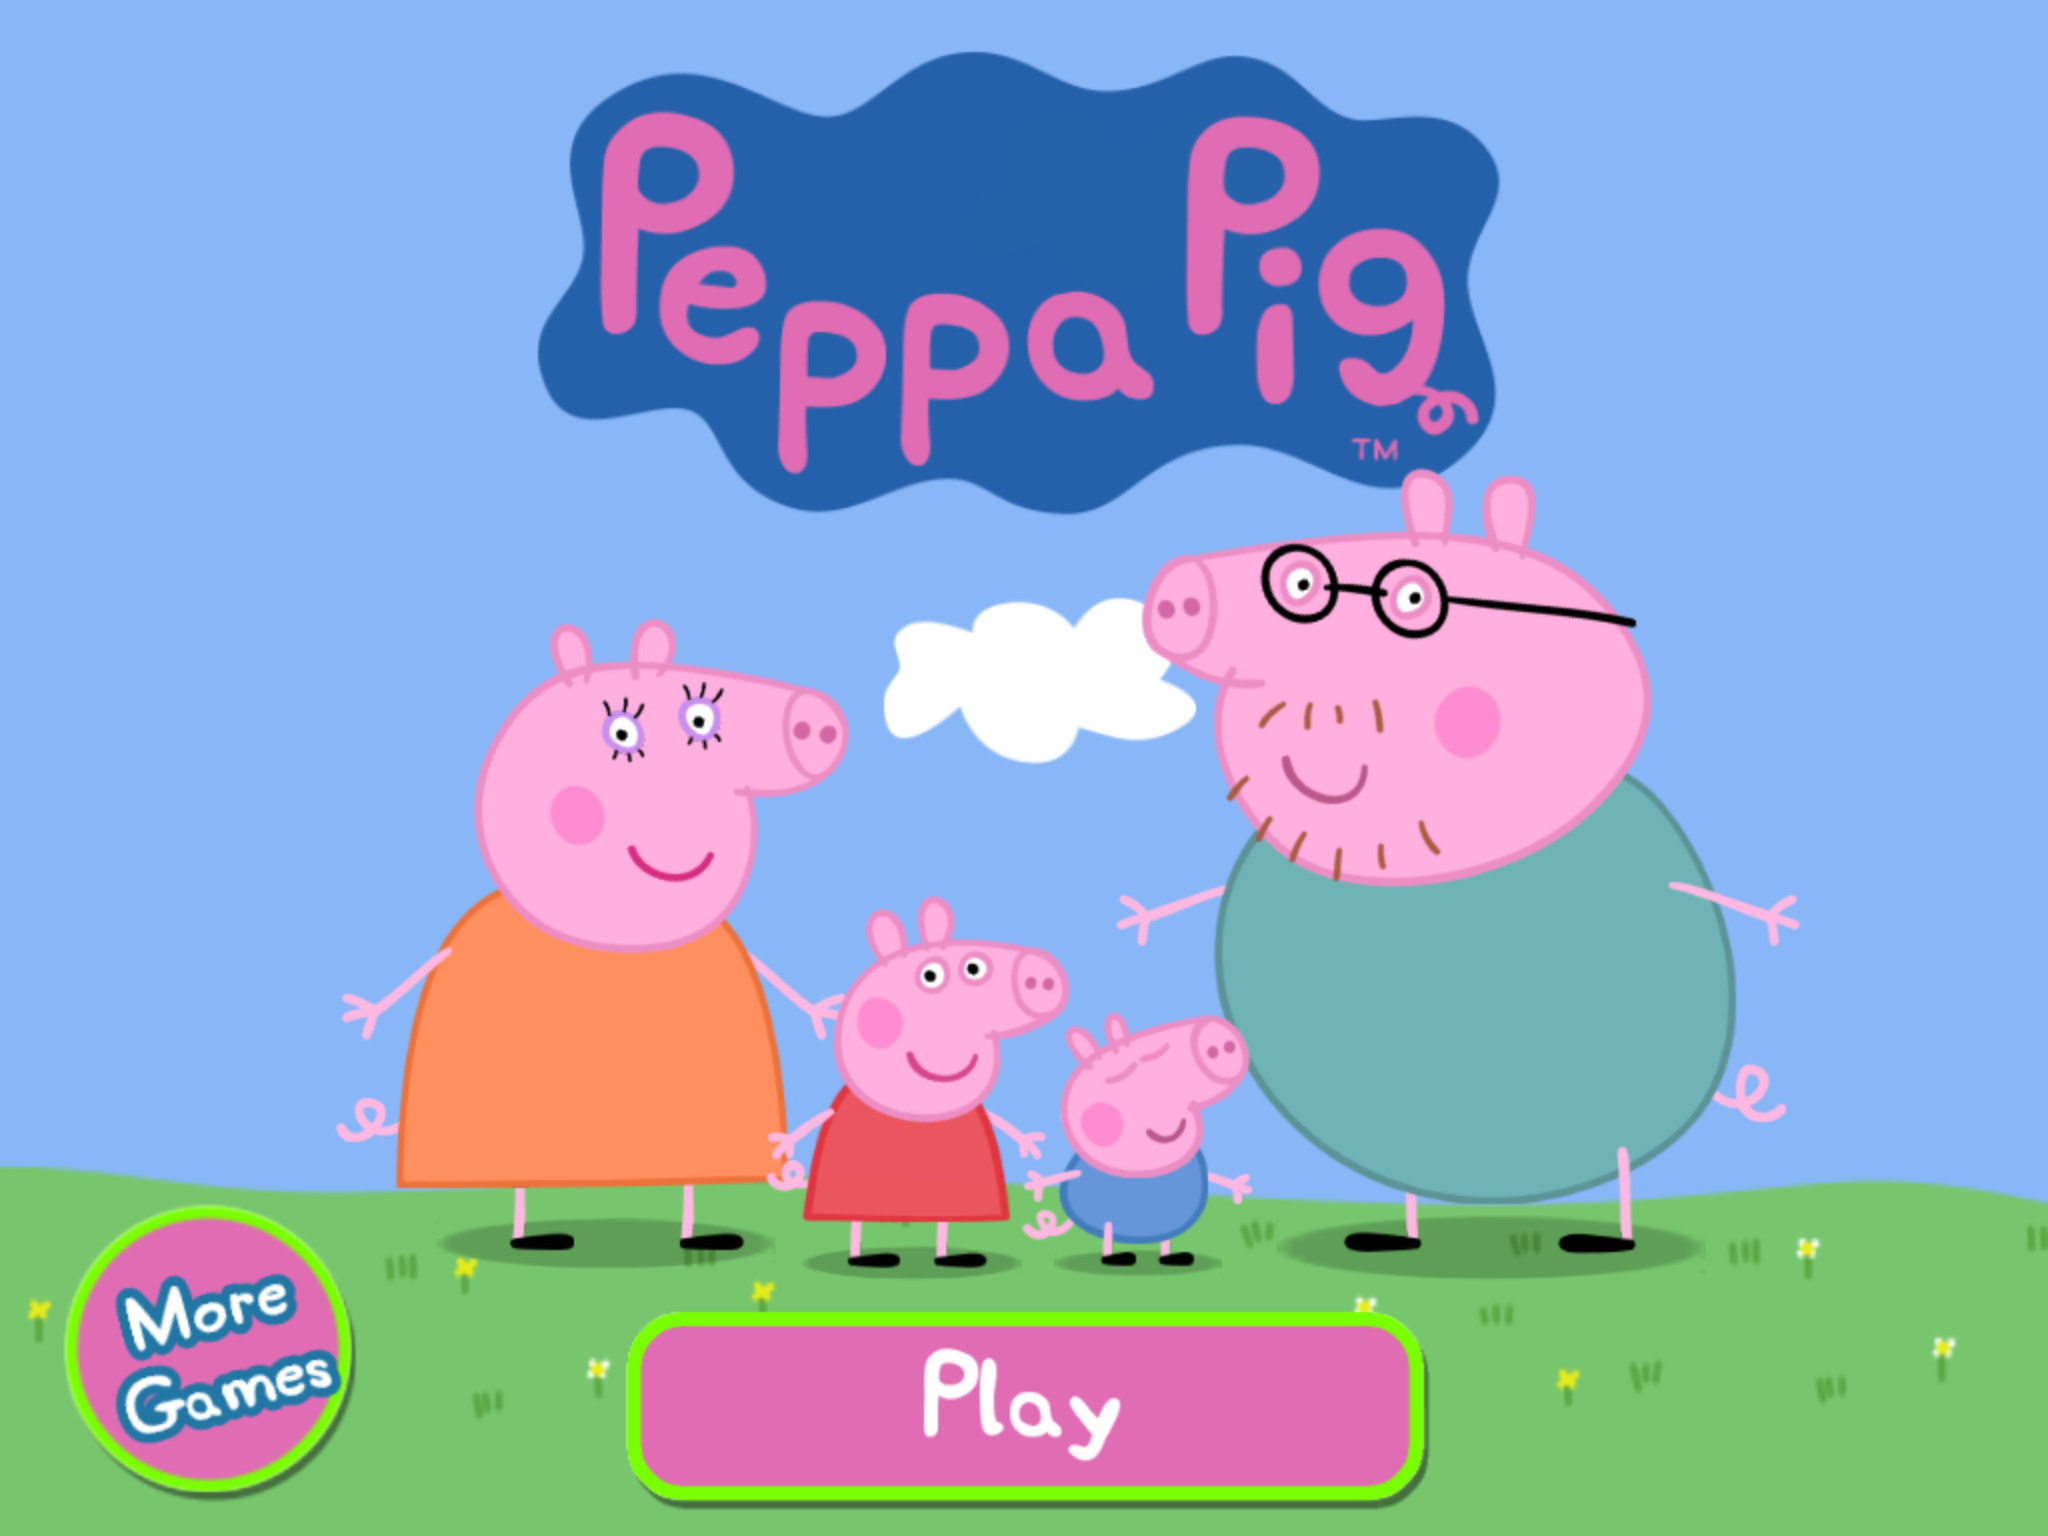 Пепе игру. Свинка Пеппа. Пеппа Пиг игра. С̠в̠и̠н̠к̠а̠ П̠э̠п̠а̠ и̠г̠з̠и̠. Приложение Свинка Пеппа.